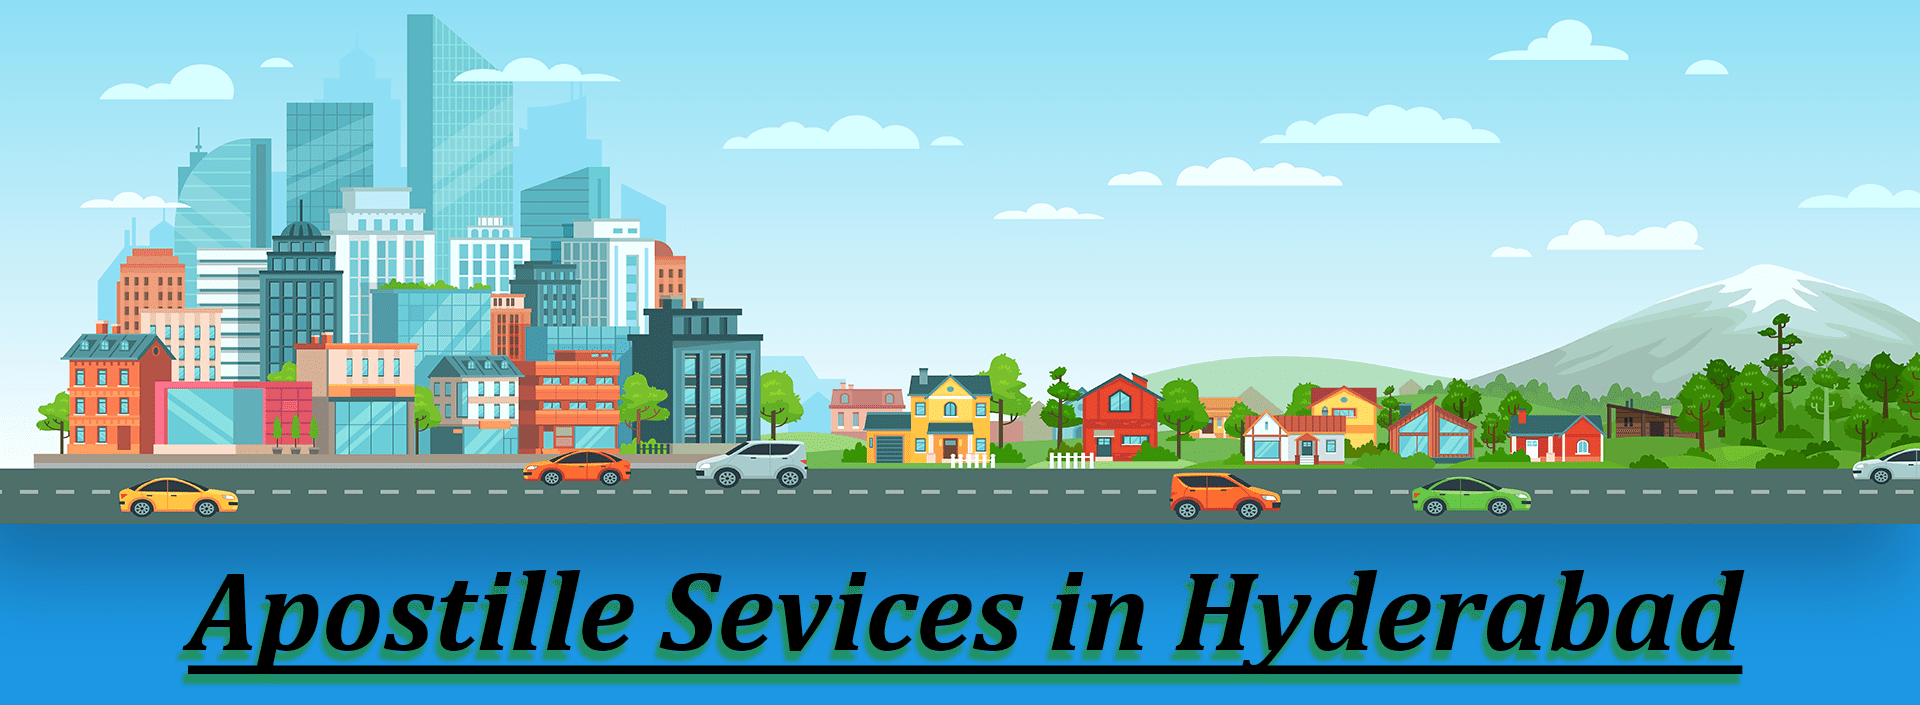 Apostille Services in Hyderabad